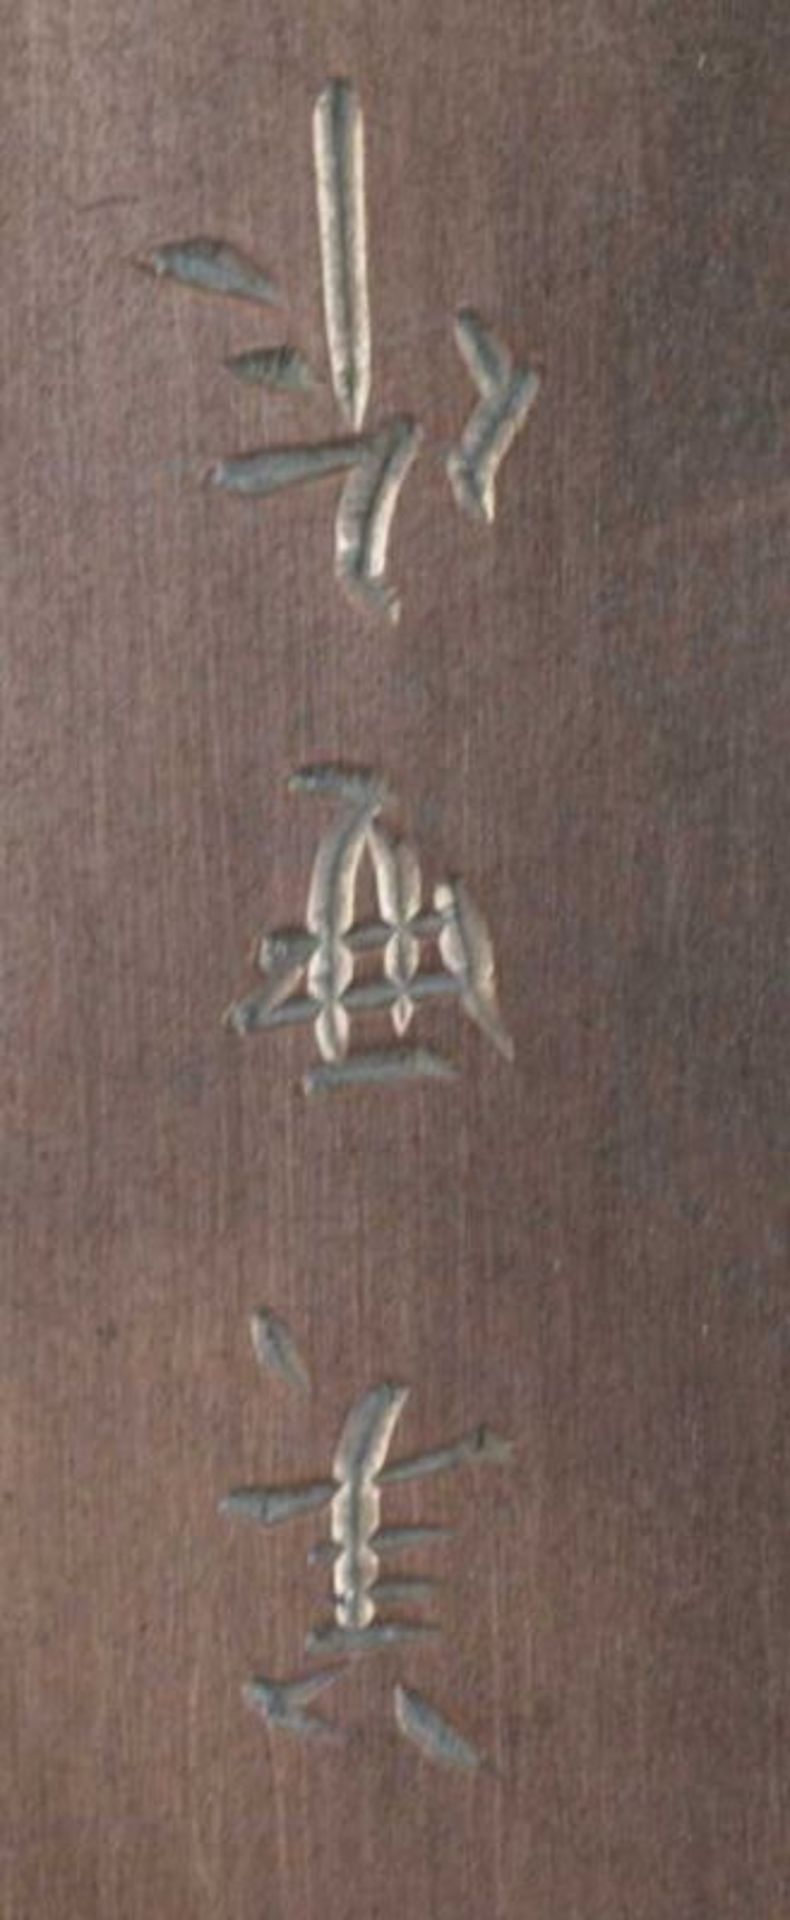 SILBERSCHATULLE Japan, um 1920, Silberschatulle mit Spuren im Schnee auf Korpus, bezeichnet wohl mit - Bild 4 aus 5